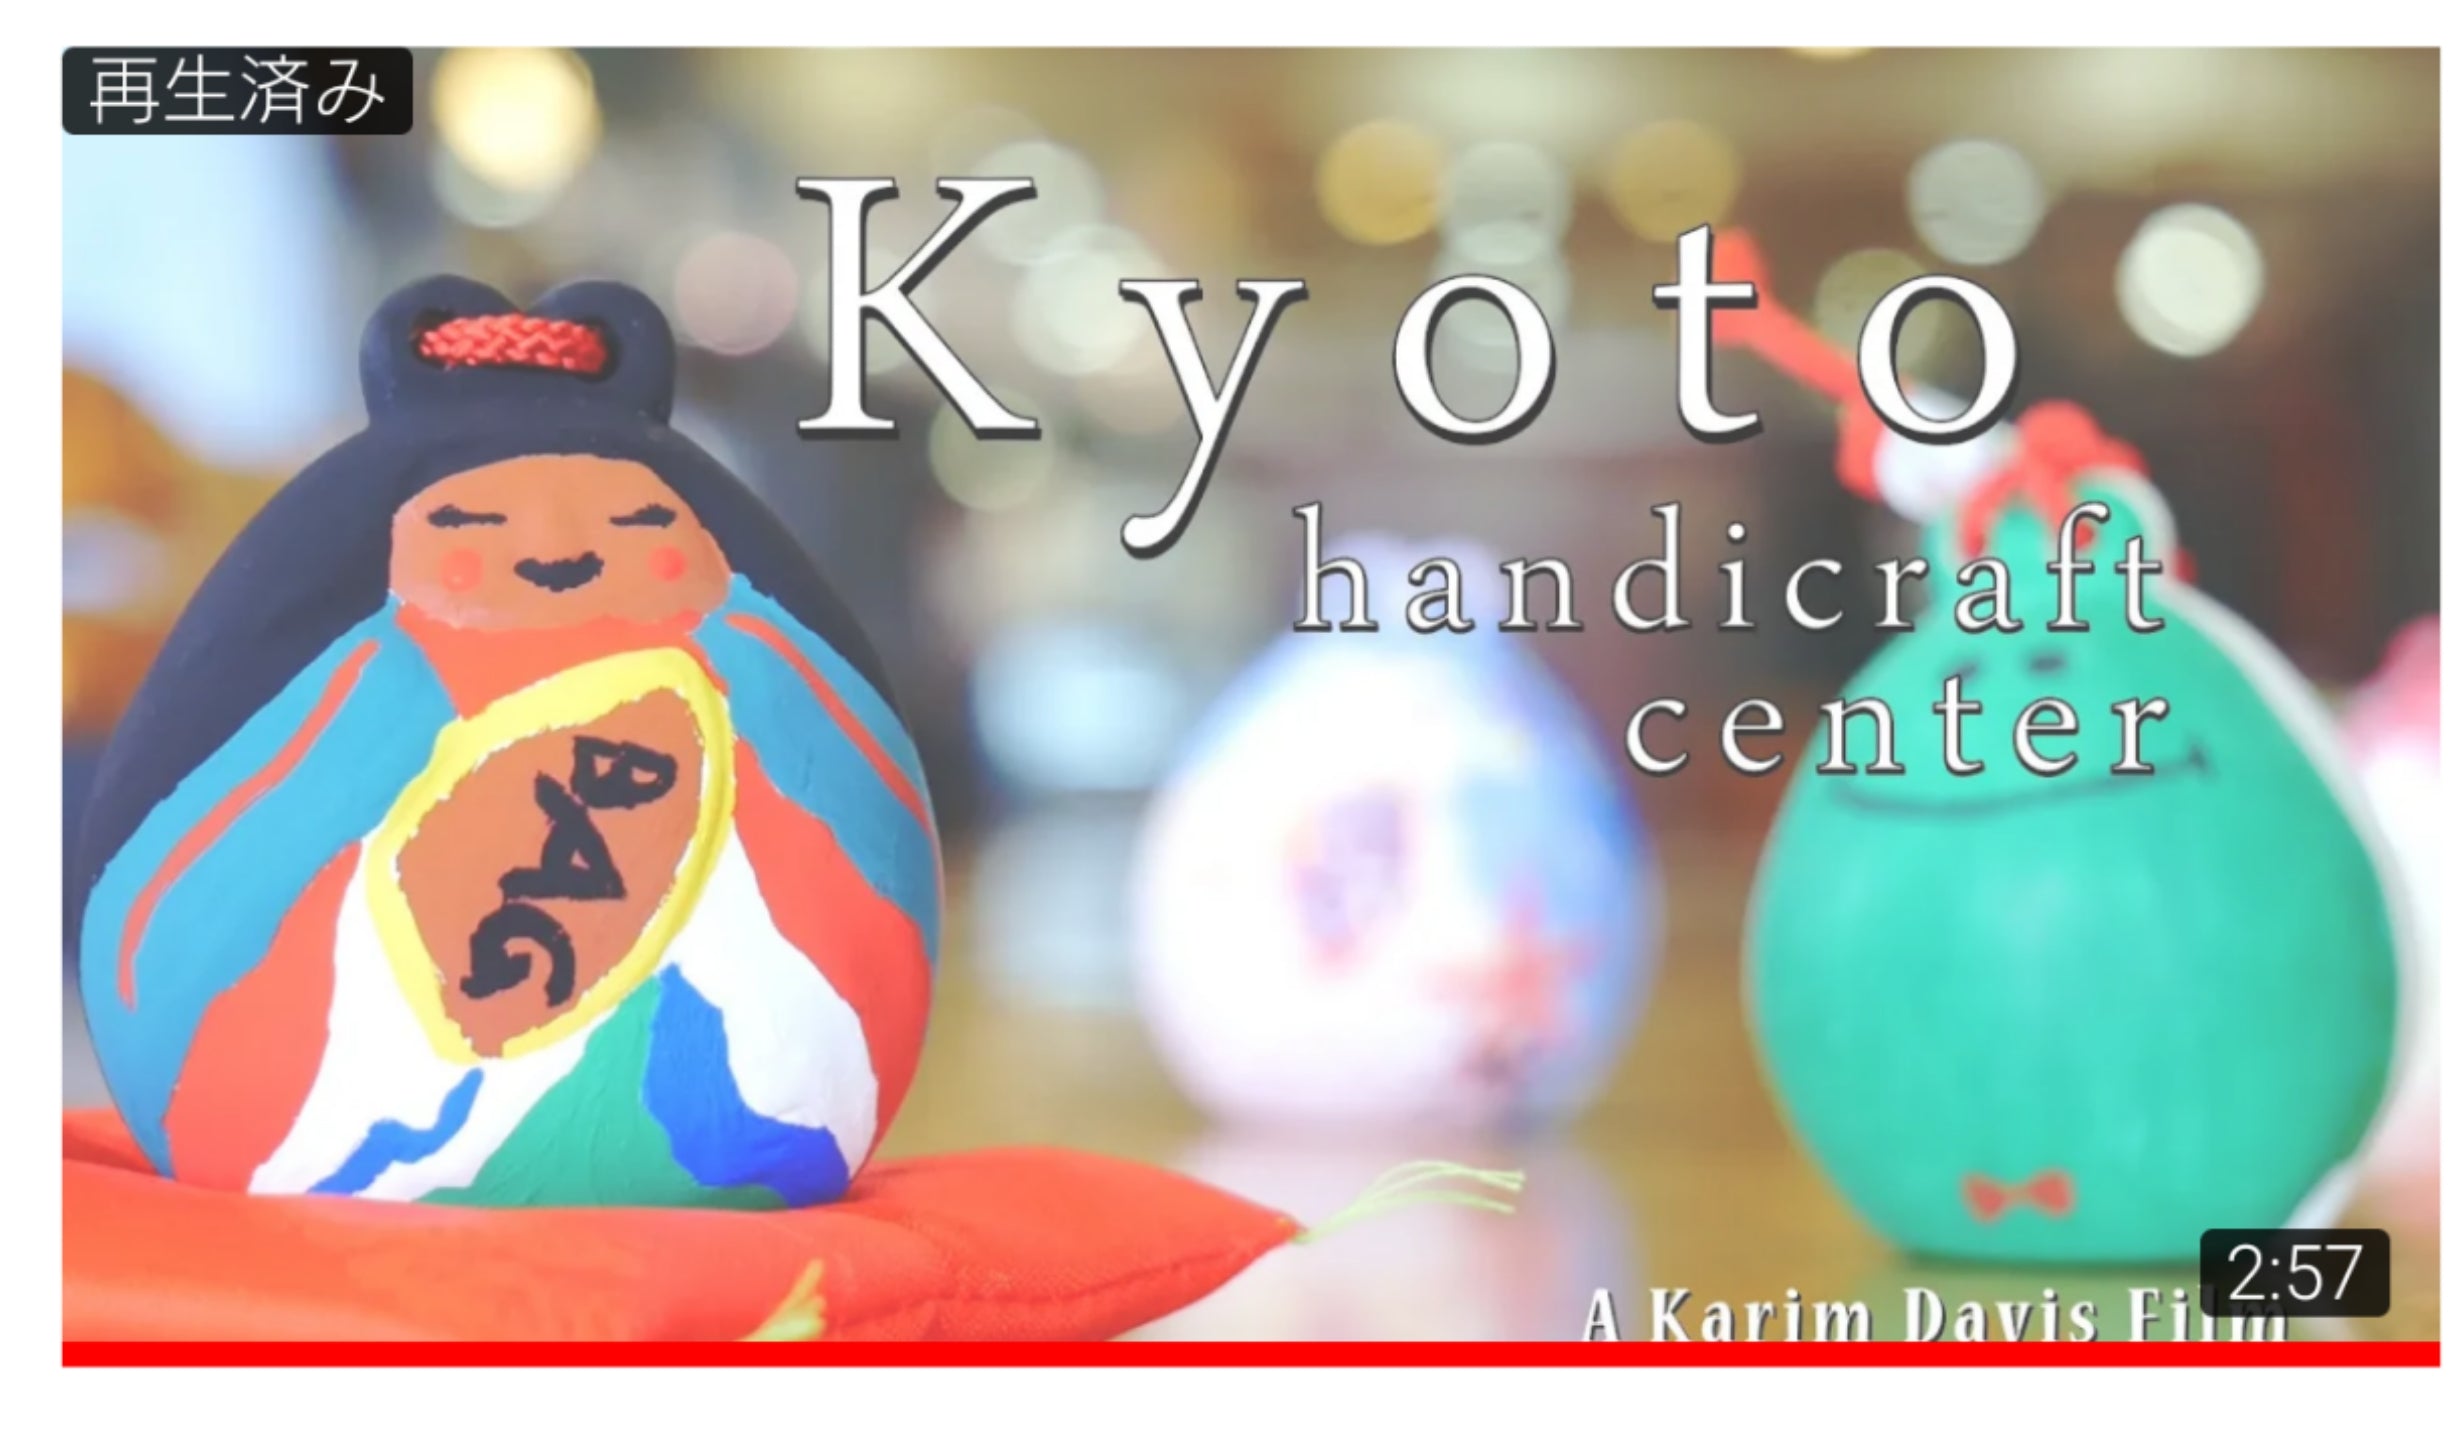 Movie about Kyoto Handicraft Center by Karim Davis